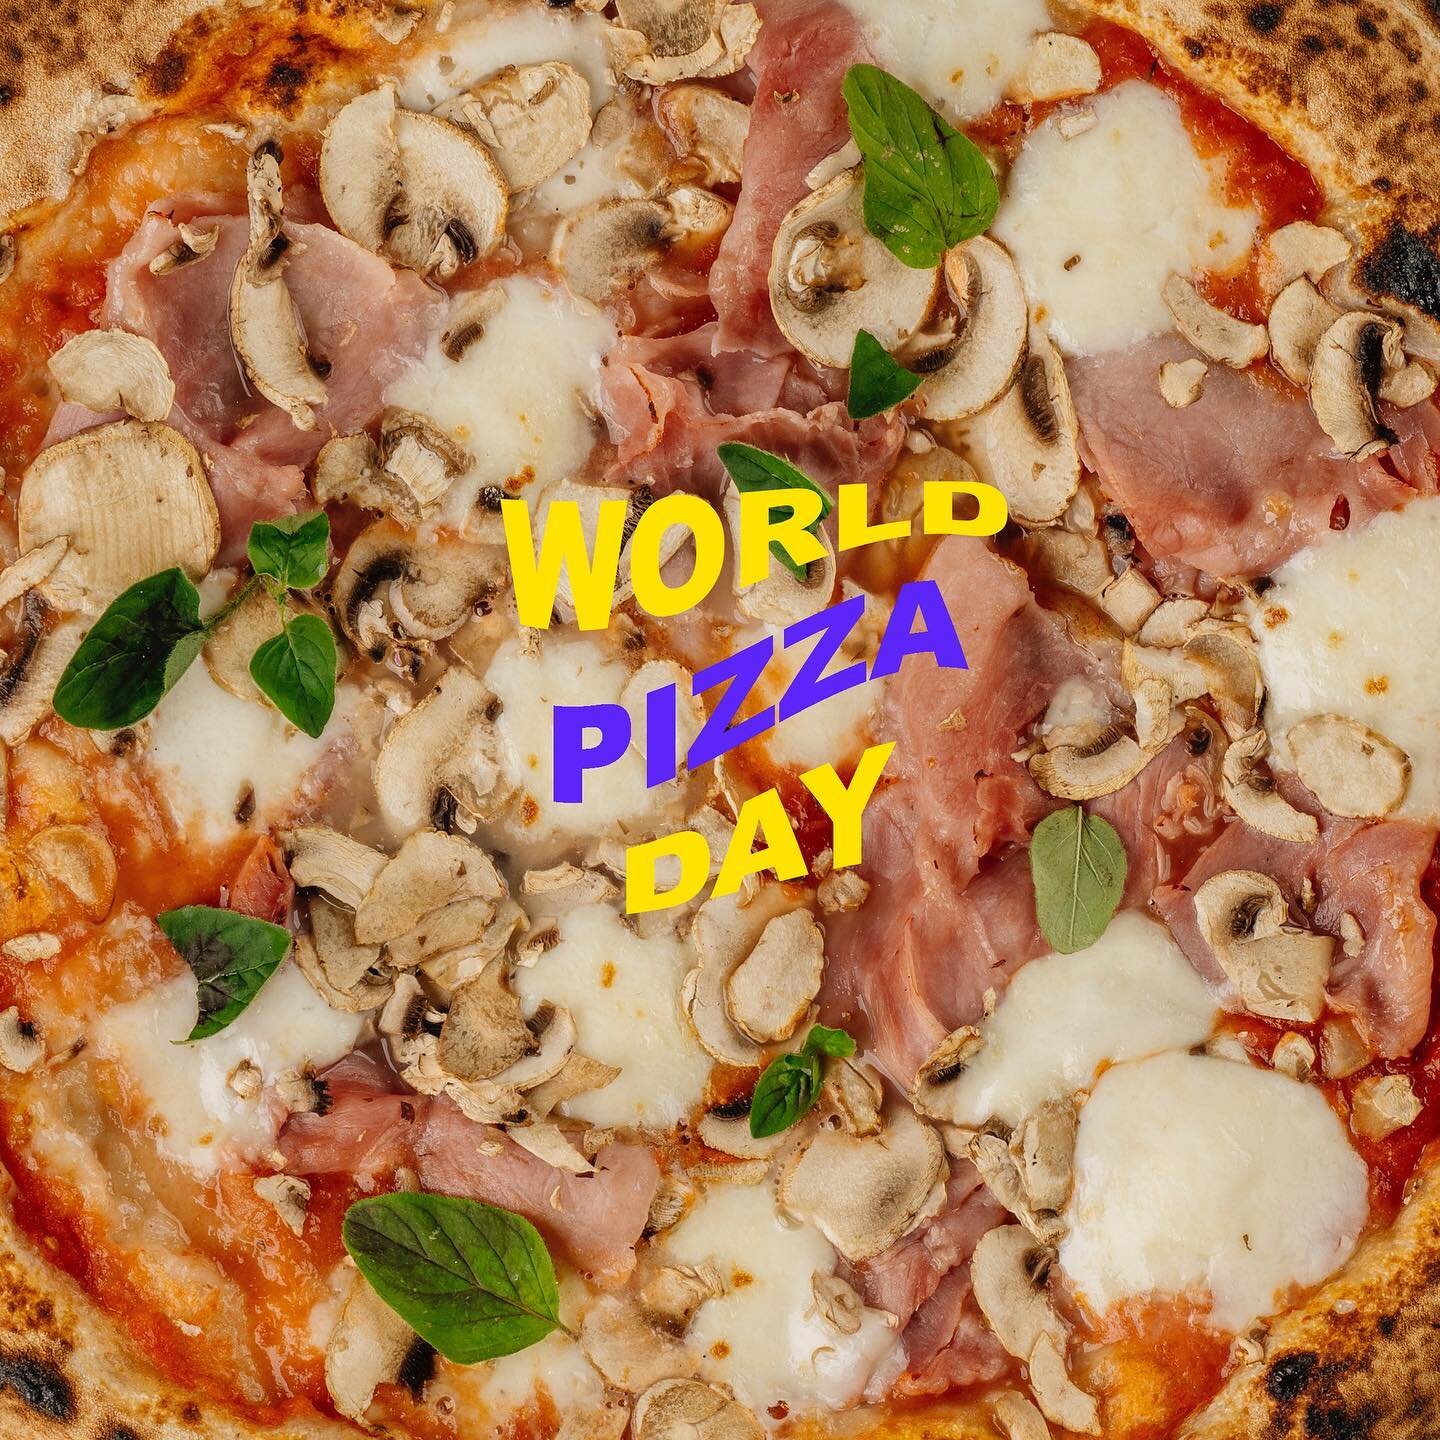 Danes je #worldpizzaday🍕 , zato vam v trappi podarjamo zastonj dostavo znotraj obvoznice 💥🚗 pokličite 059 040 010 ali naročite na www.trappa.si 👋🏻
.
.
.
.
#trappa  #trappapizza #pizza #worldpizzaday #freedelivery #pizzaljubljana #igslovenia #i